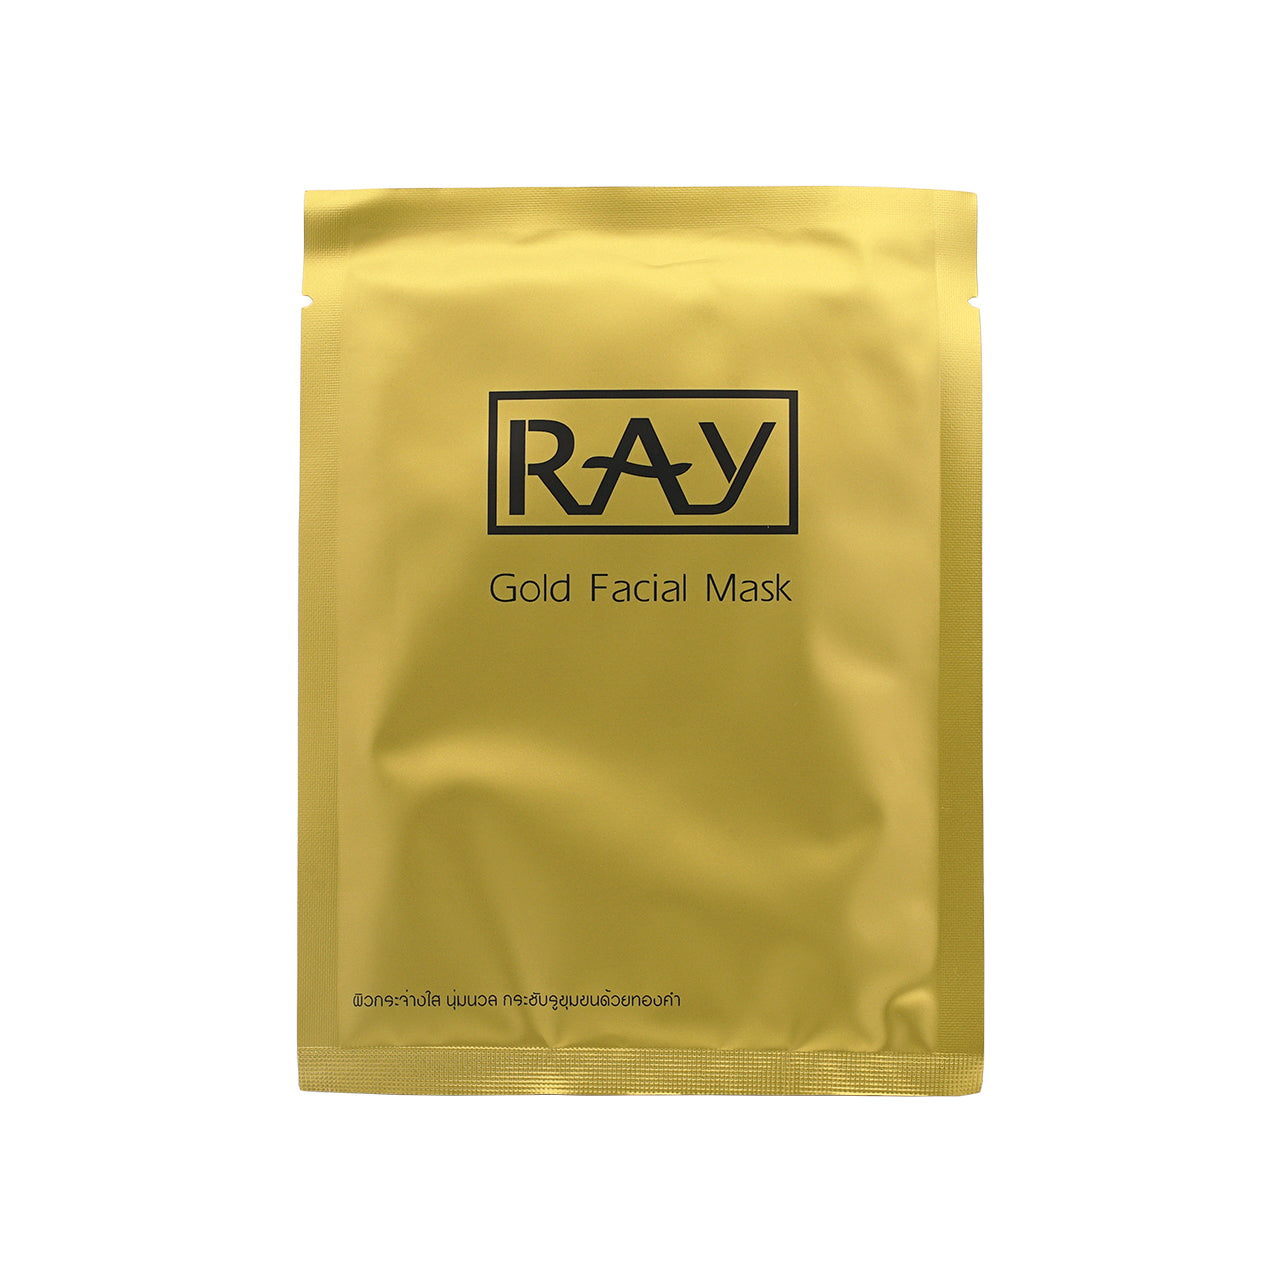 Ray Facial Mask Gold 10PCS | Sasa Global eShop